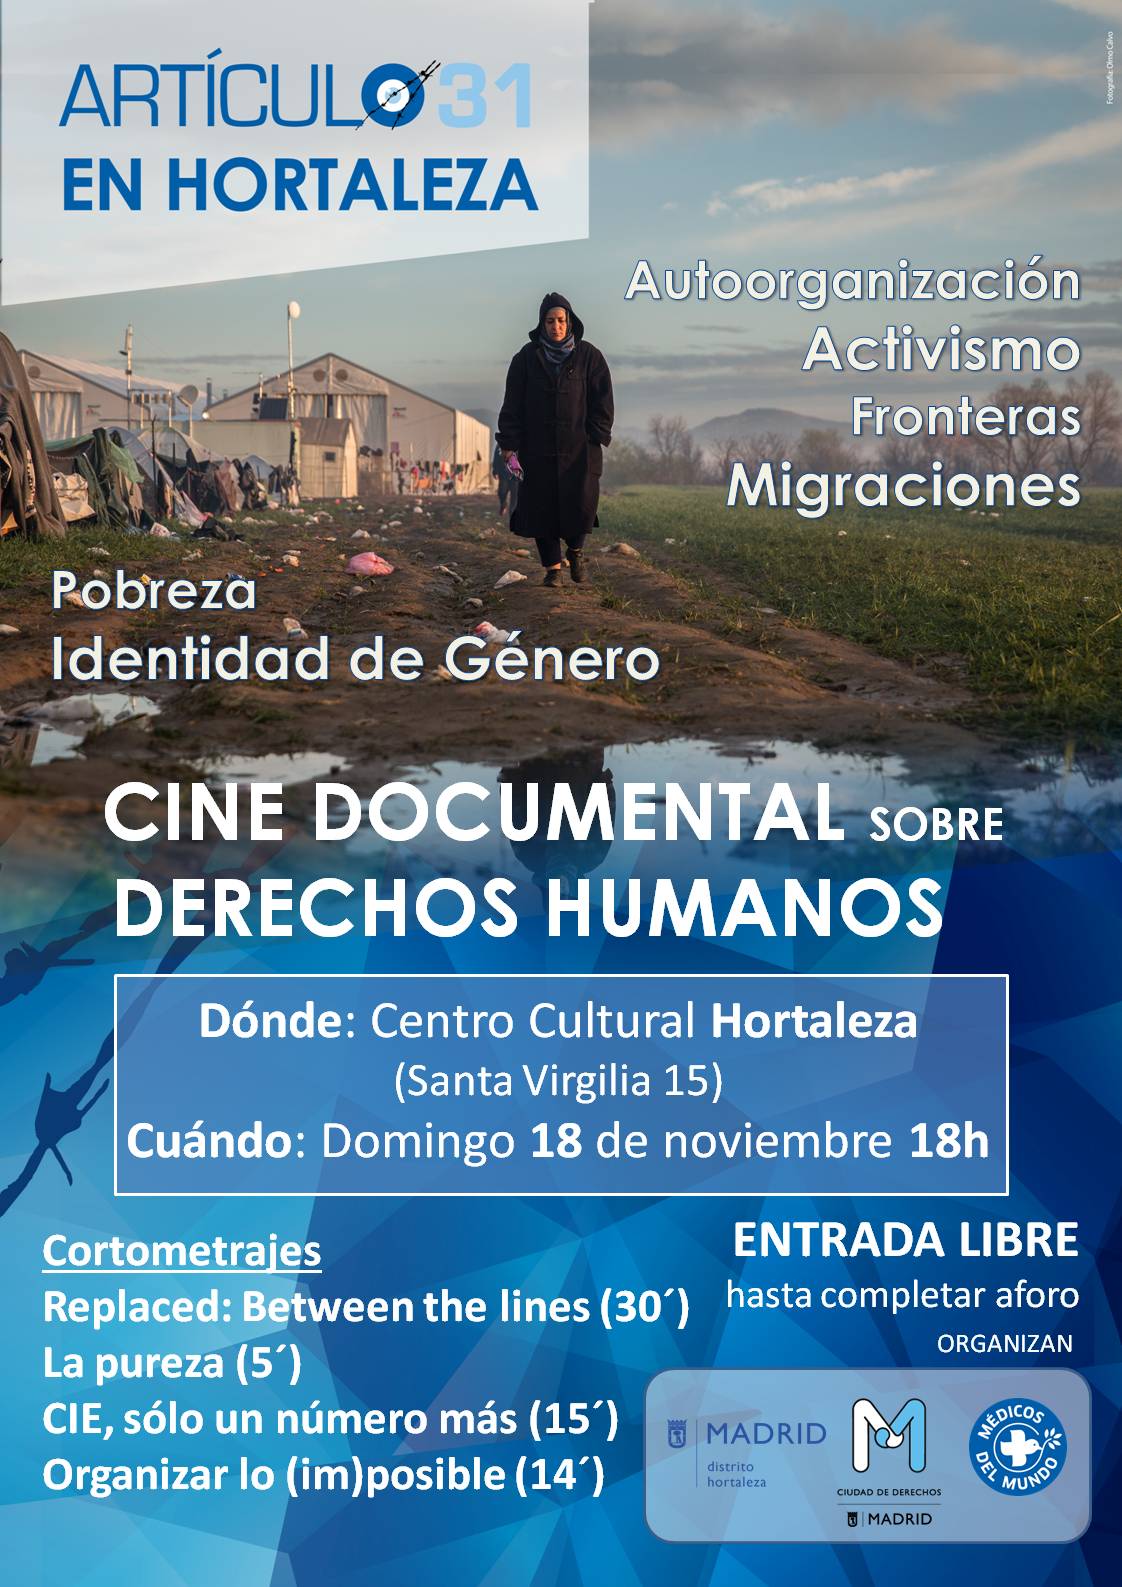 Cine documental sobre Derechos Humanos en el Centro Cultural Hortaleza